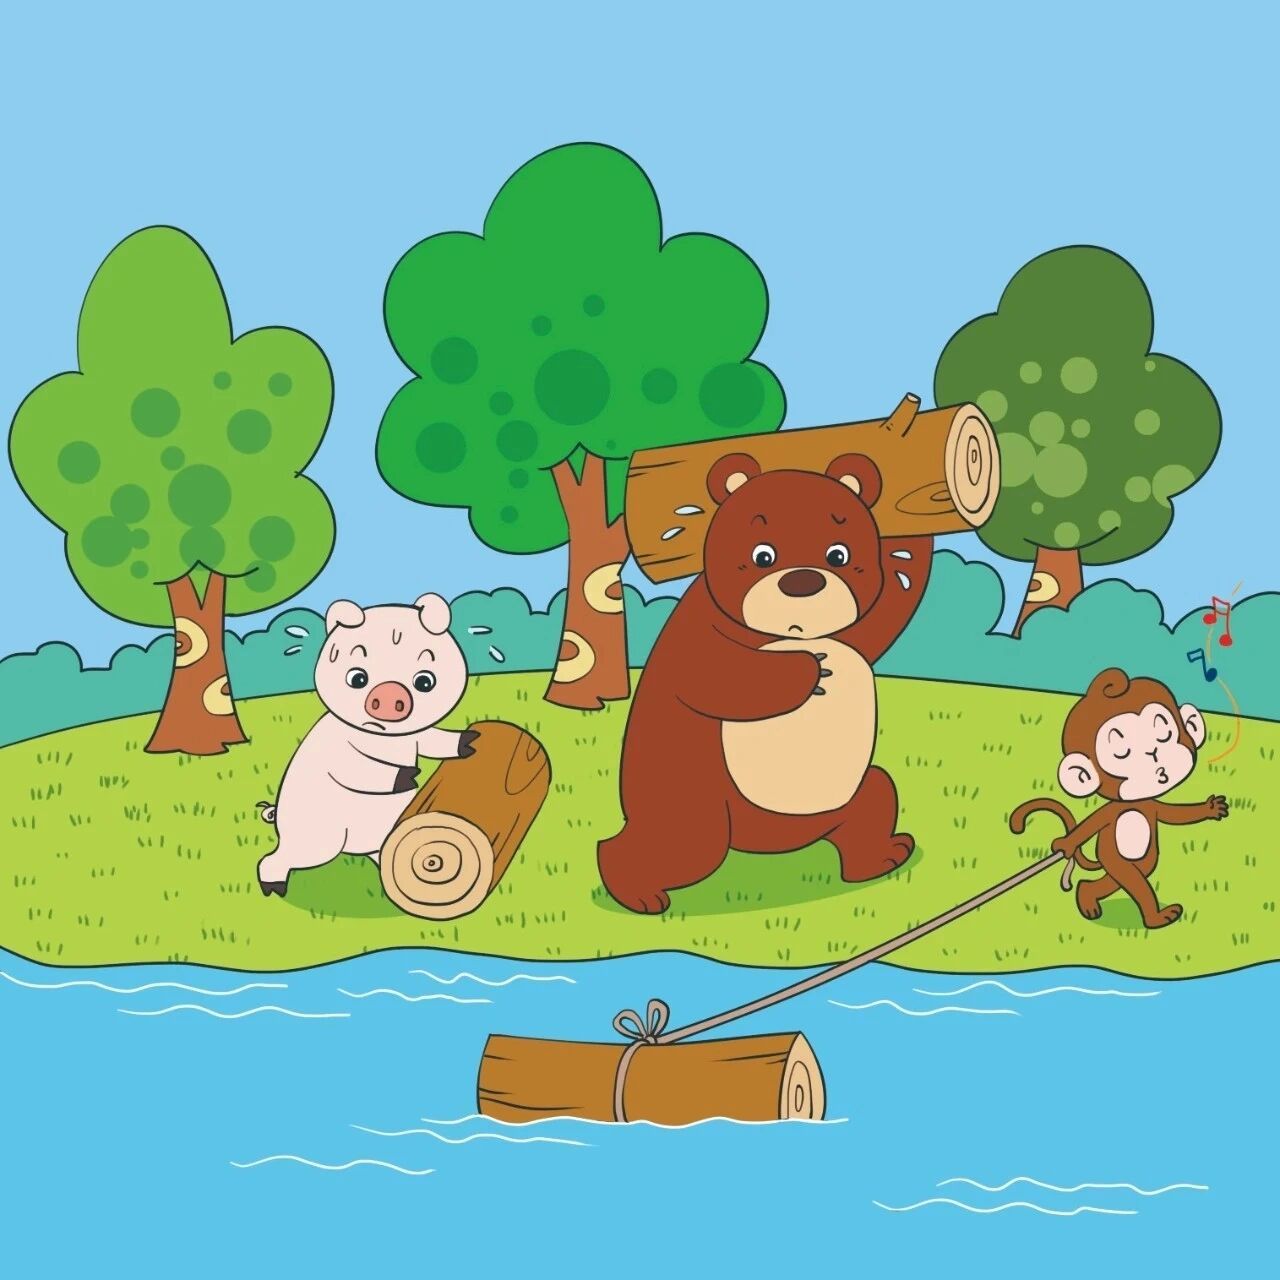 97一年级看图写话《搬木头》 夏日的一天,小猪,小熊,小猴一起帮木材